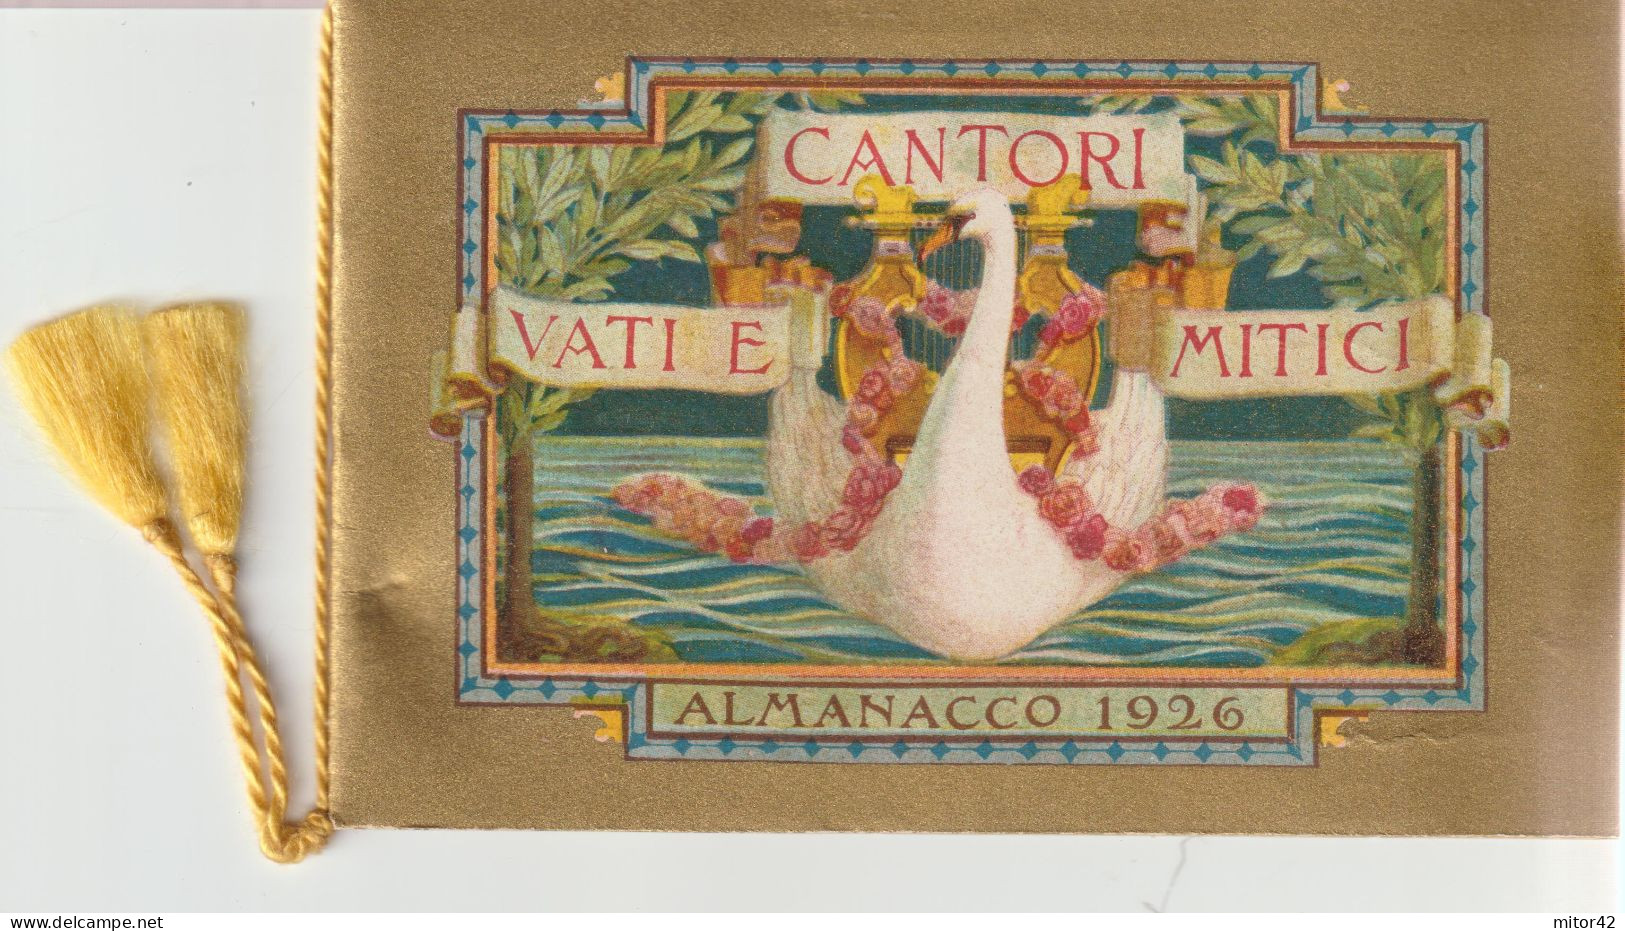 26-Calendarietto Da Barbiere-1926-Vati E Cantori Mitici Con Custodia-Ed. Sirio-Milano - Grand Format : 1941-60